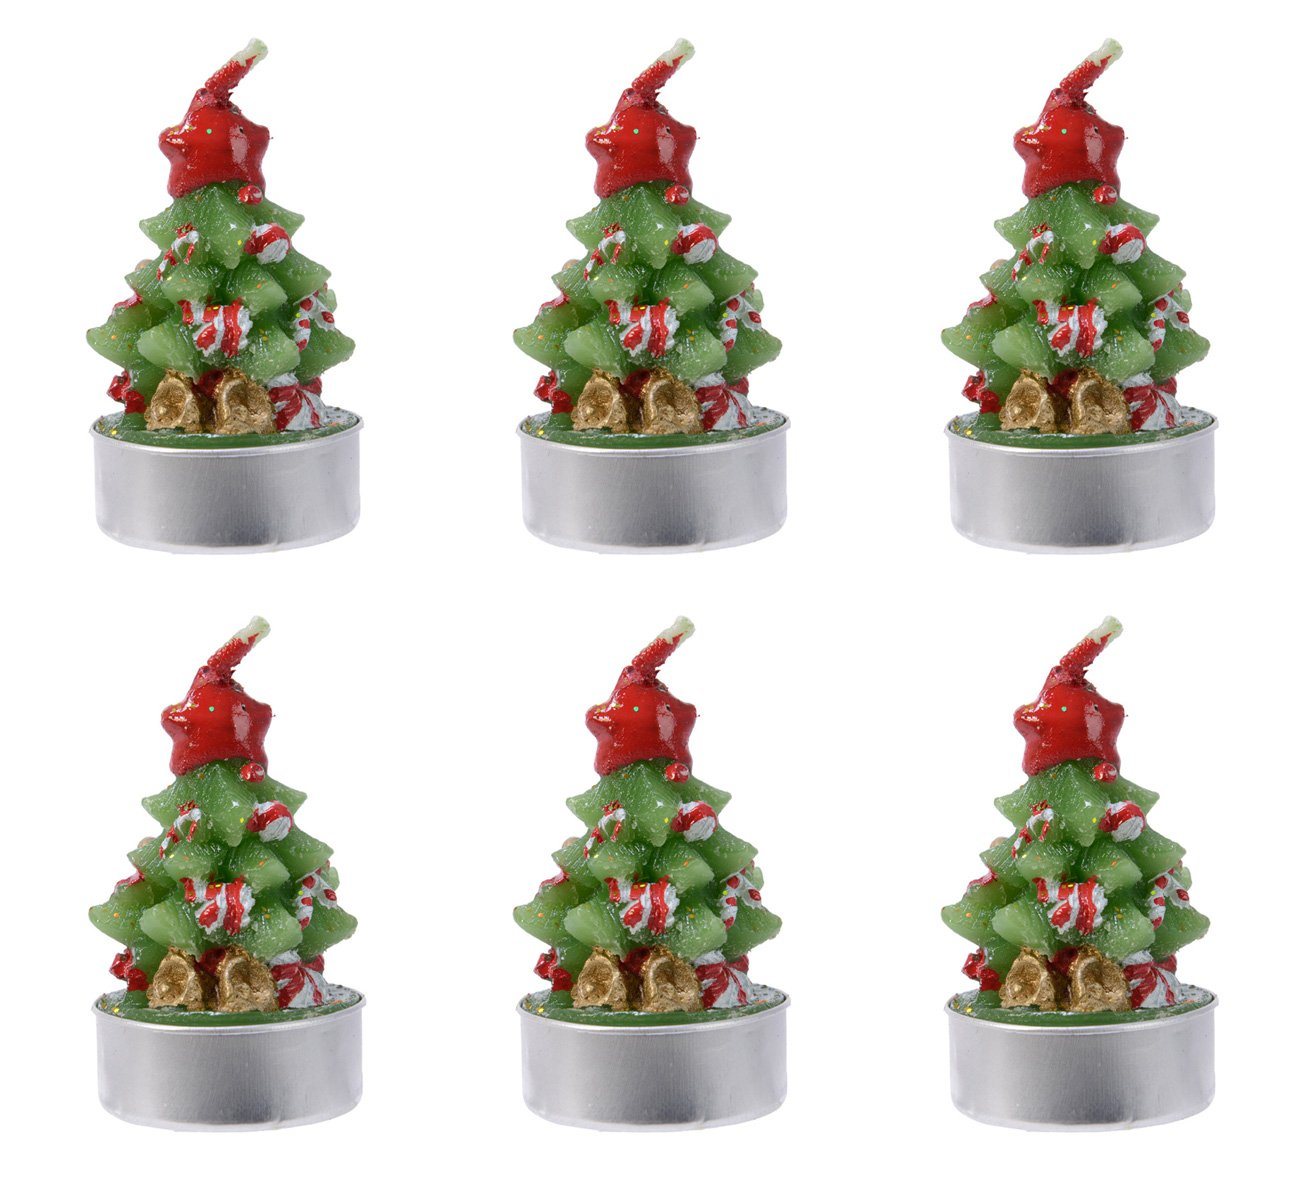 Decoris season decorations Teelicht, Teelichter geschmückte Tannen Weihnachtskerzen Wachs 6cm grün 6er Set von Decoris season decorations